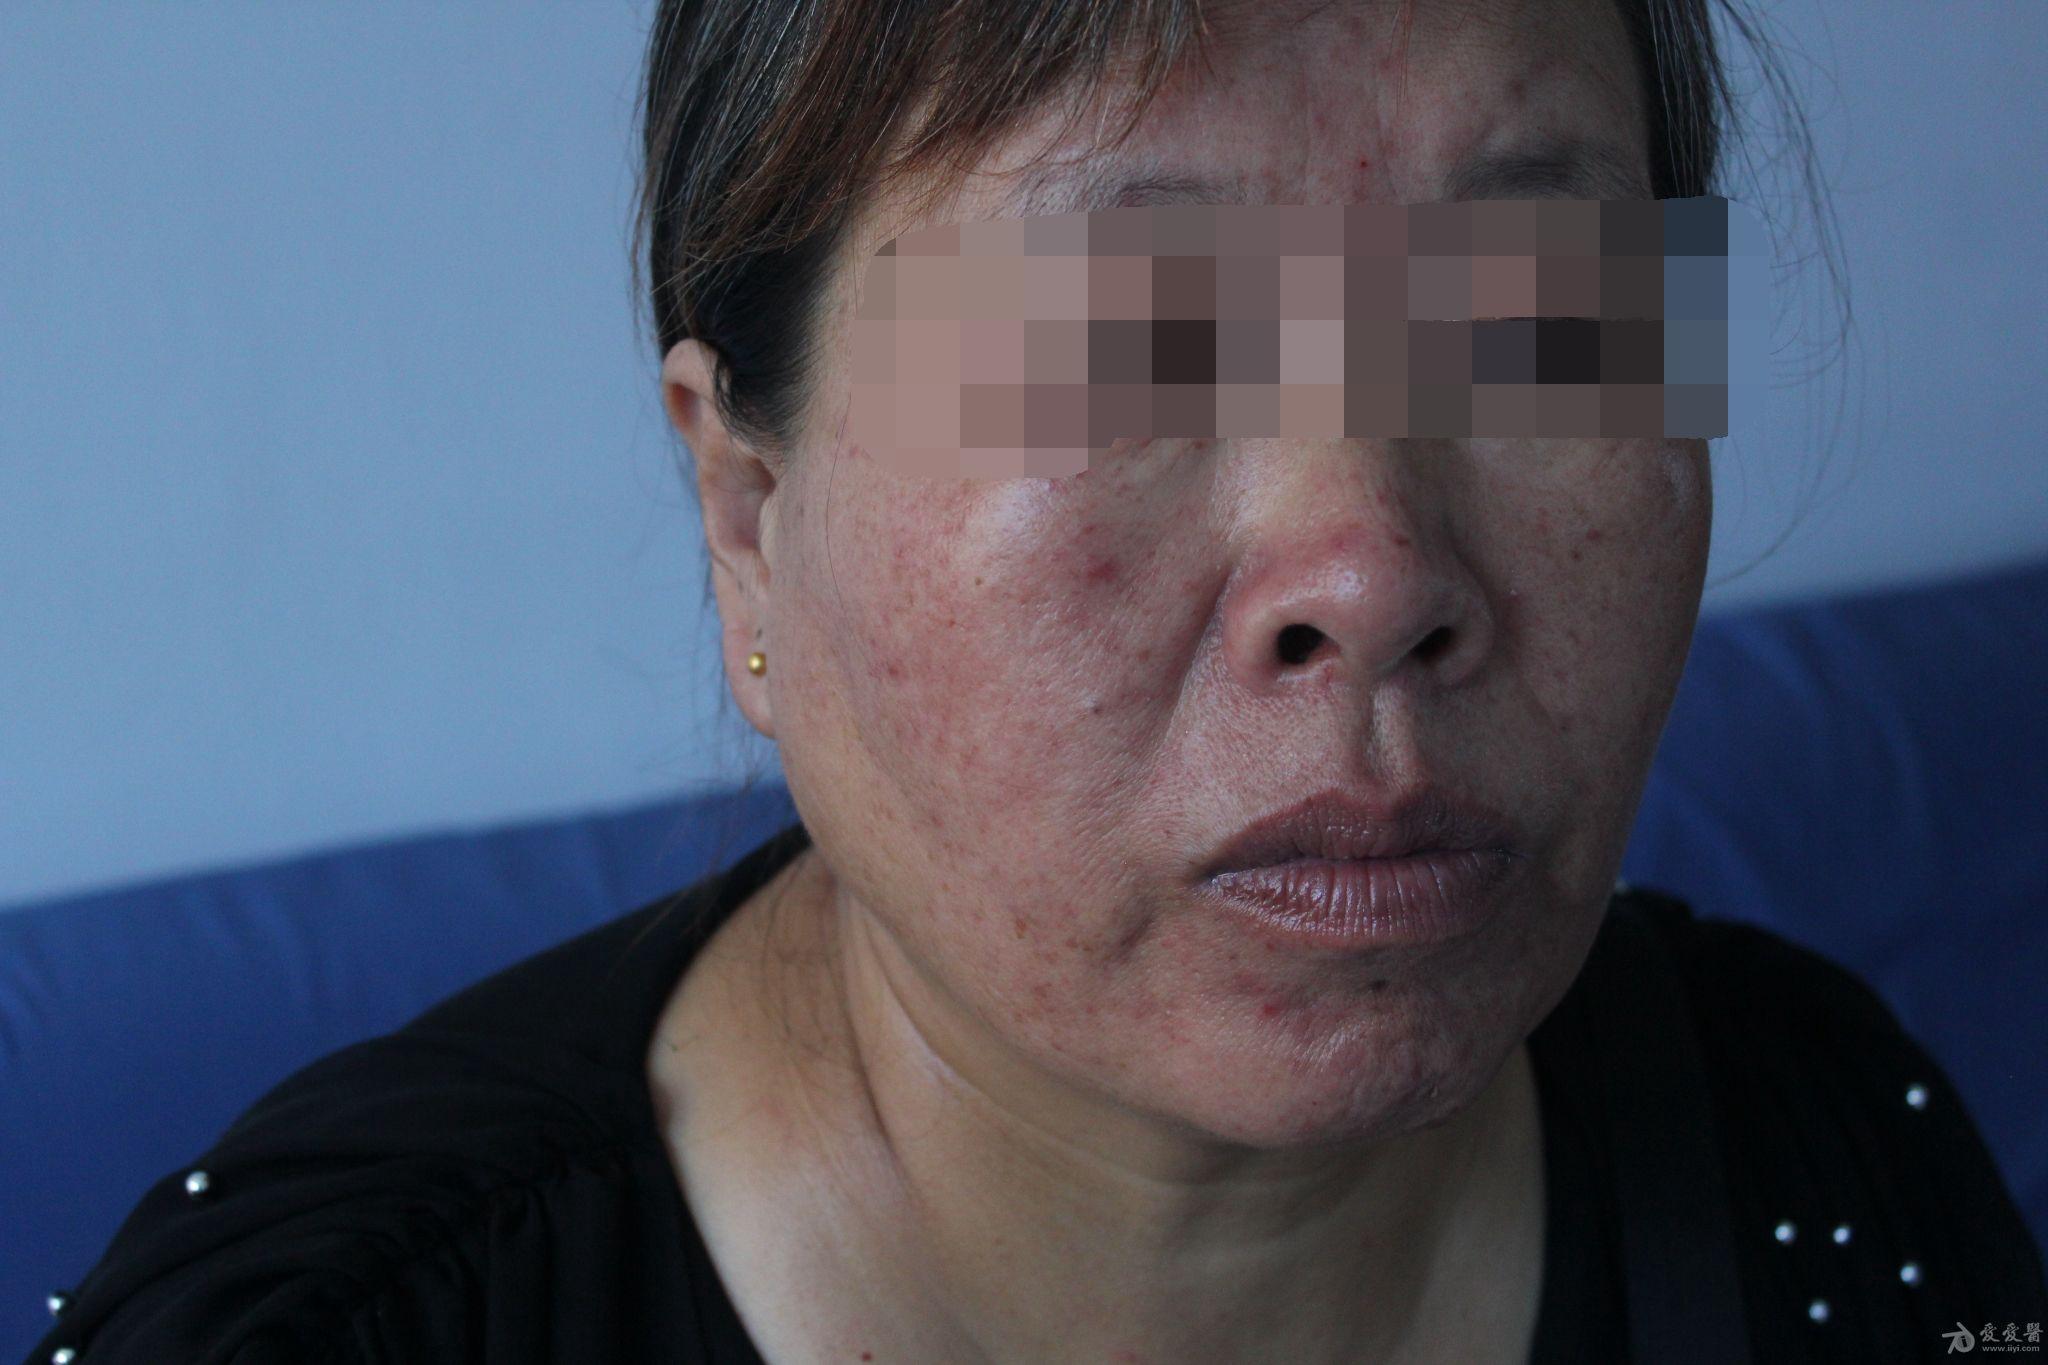 刘某,女55岁,面颊部突然起大量疱疹